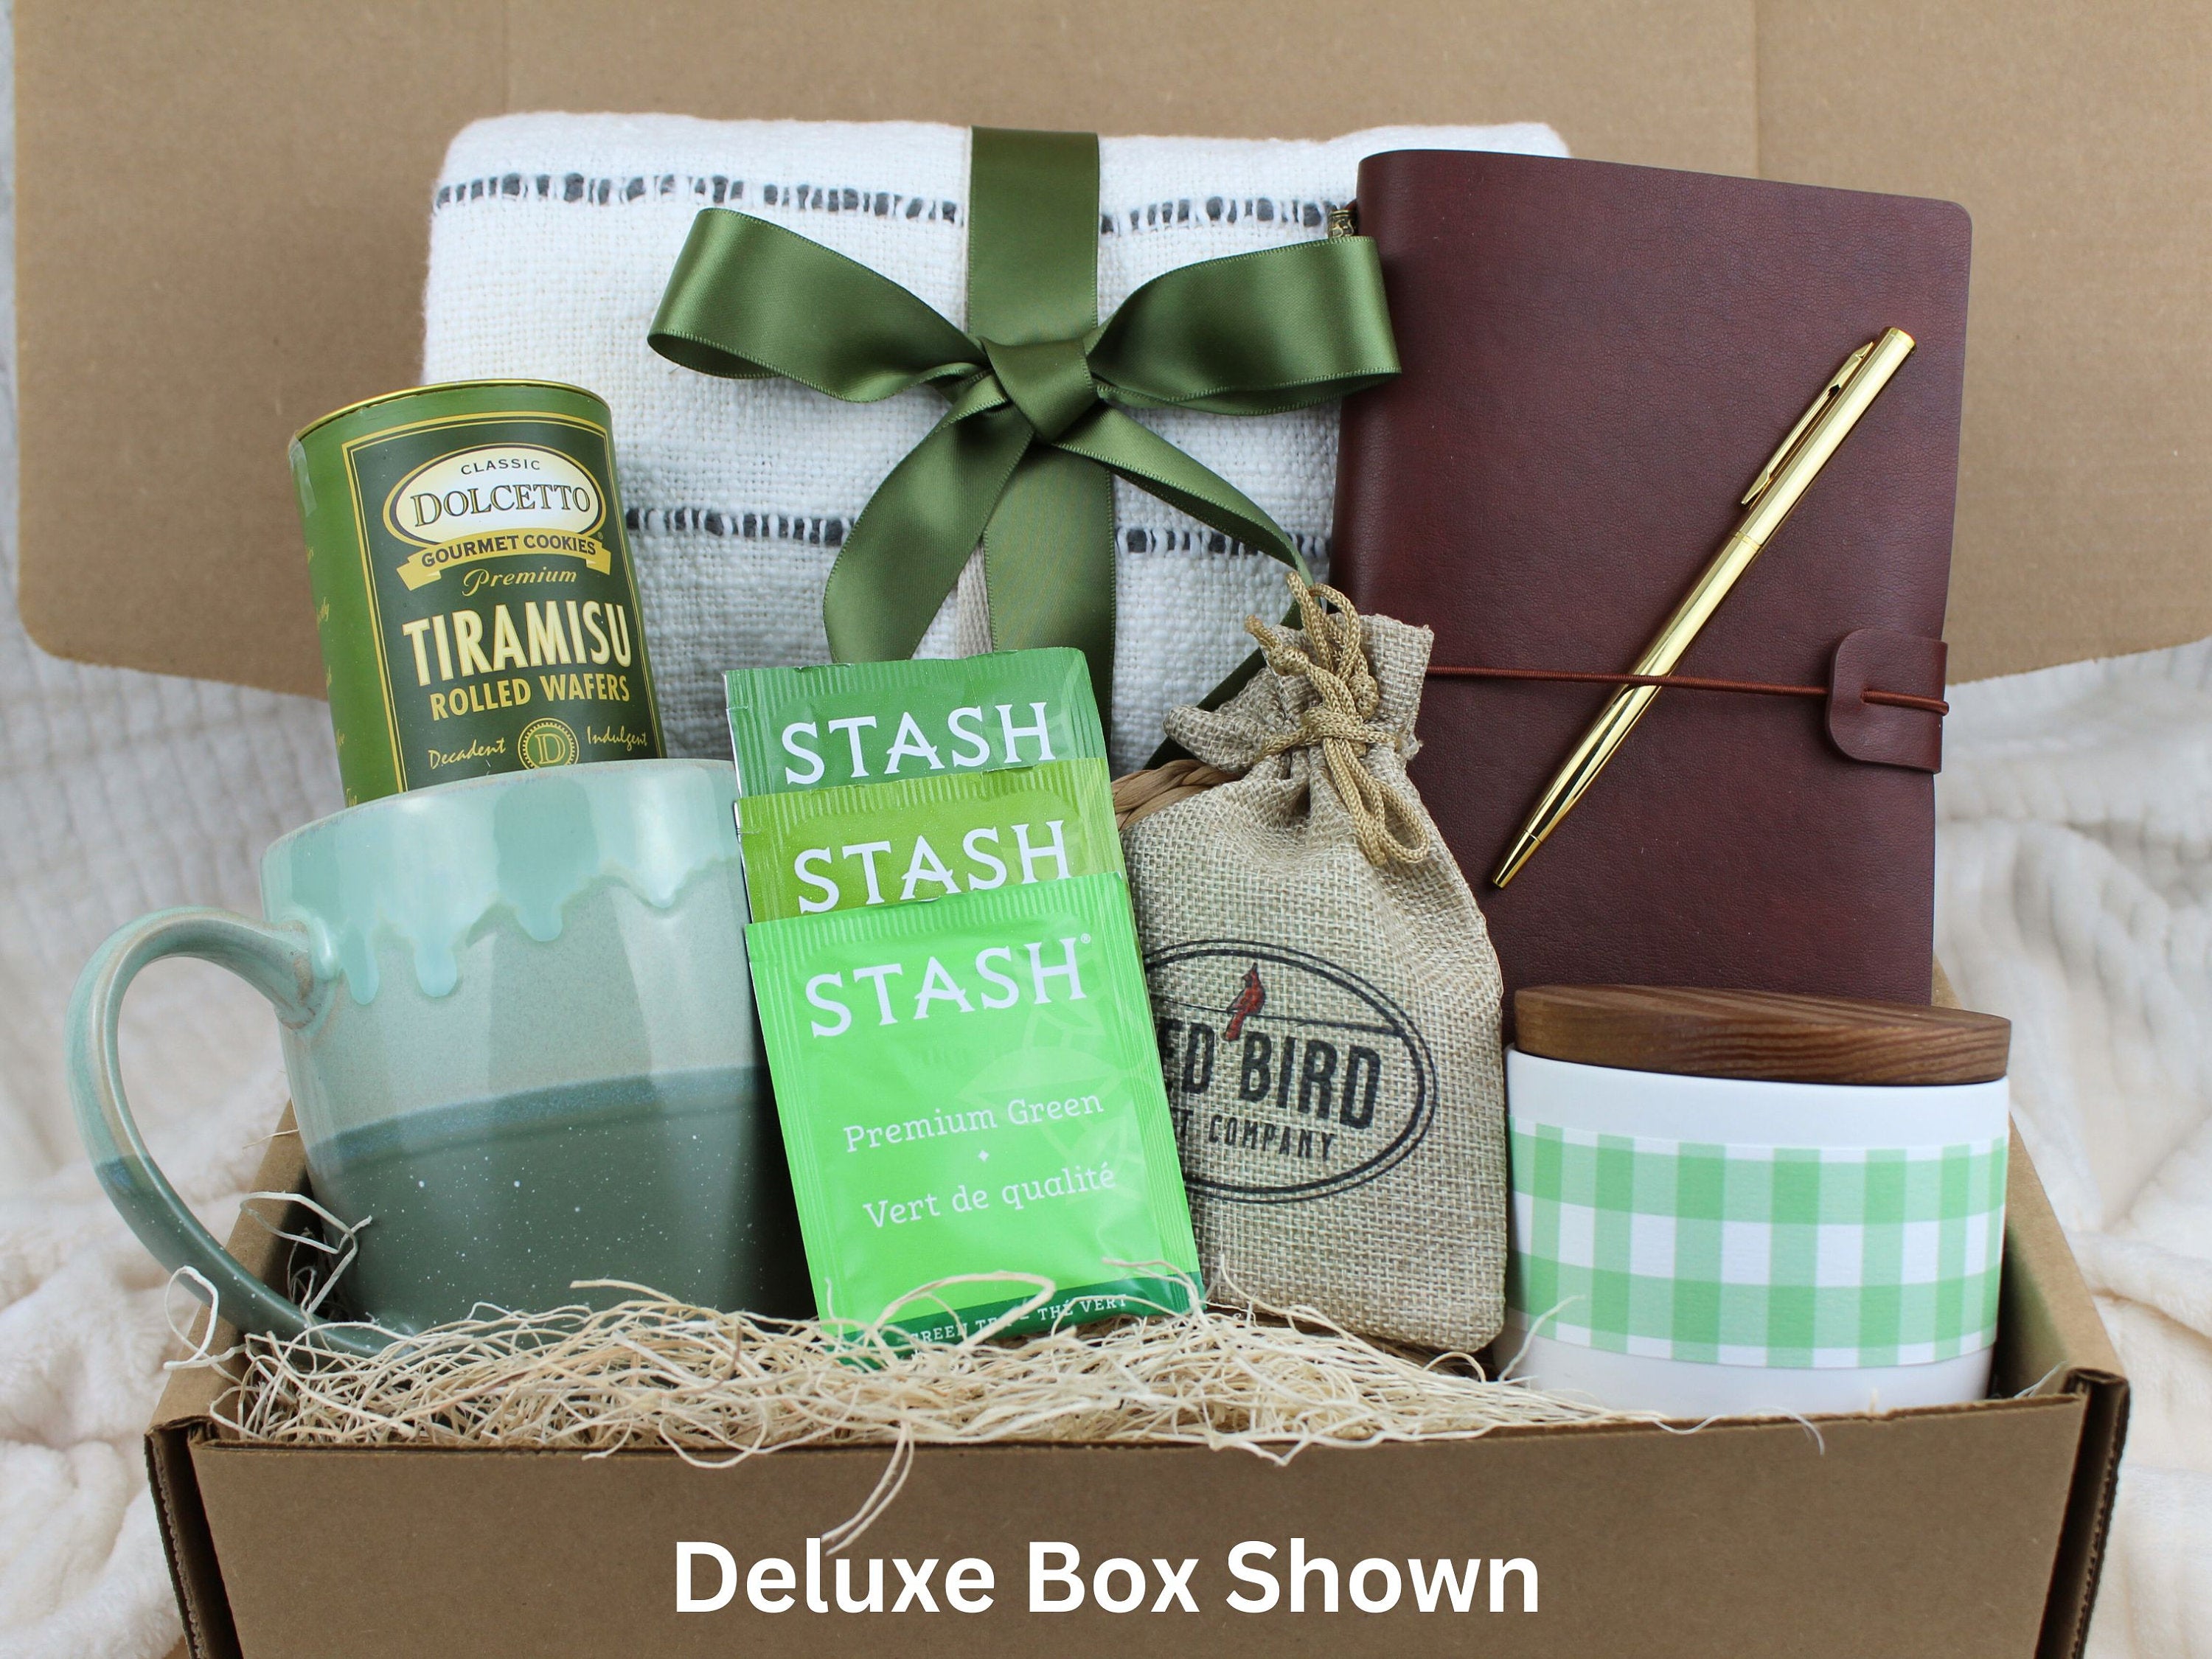 Thinking of You Gift Box - Green Mug